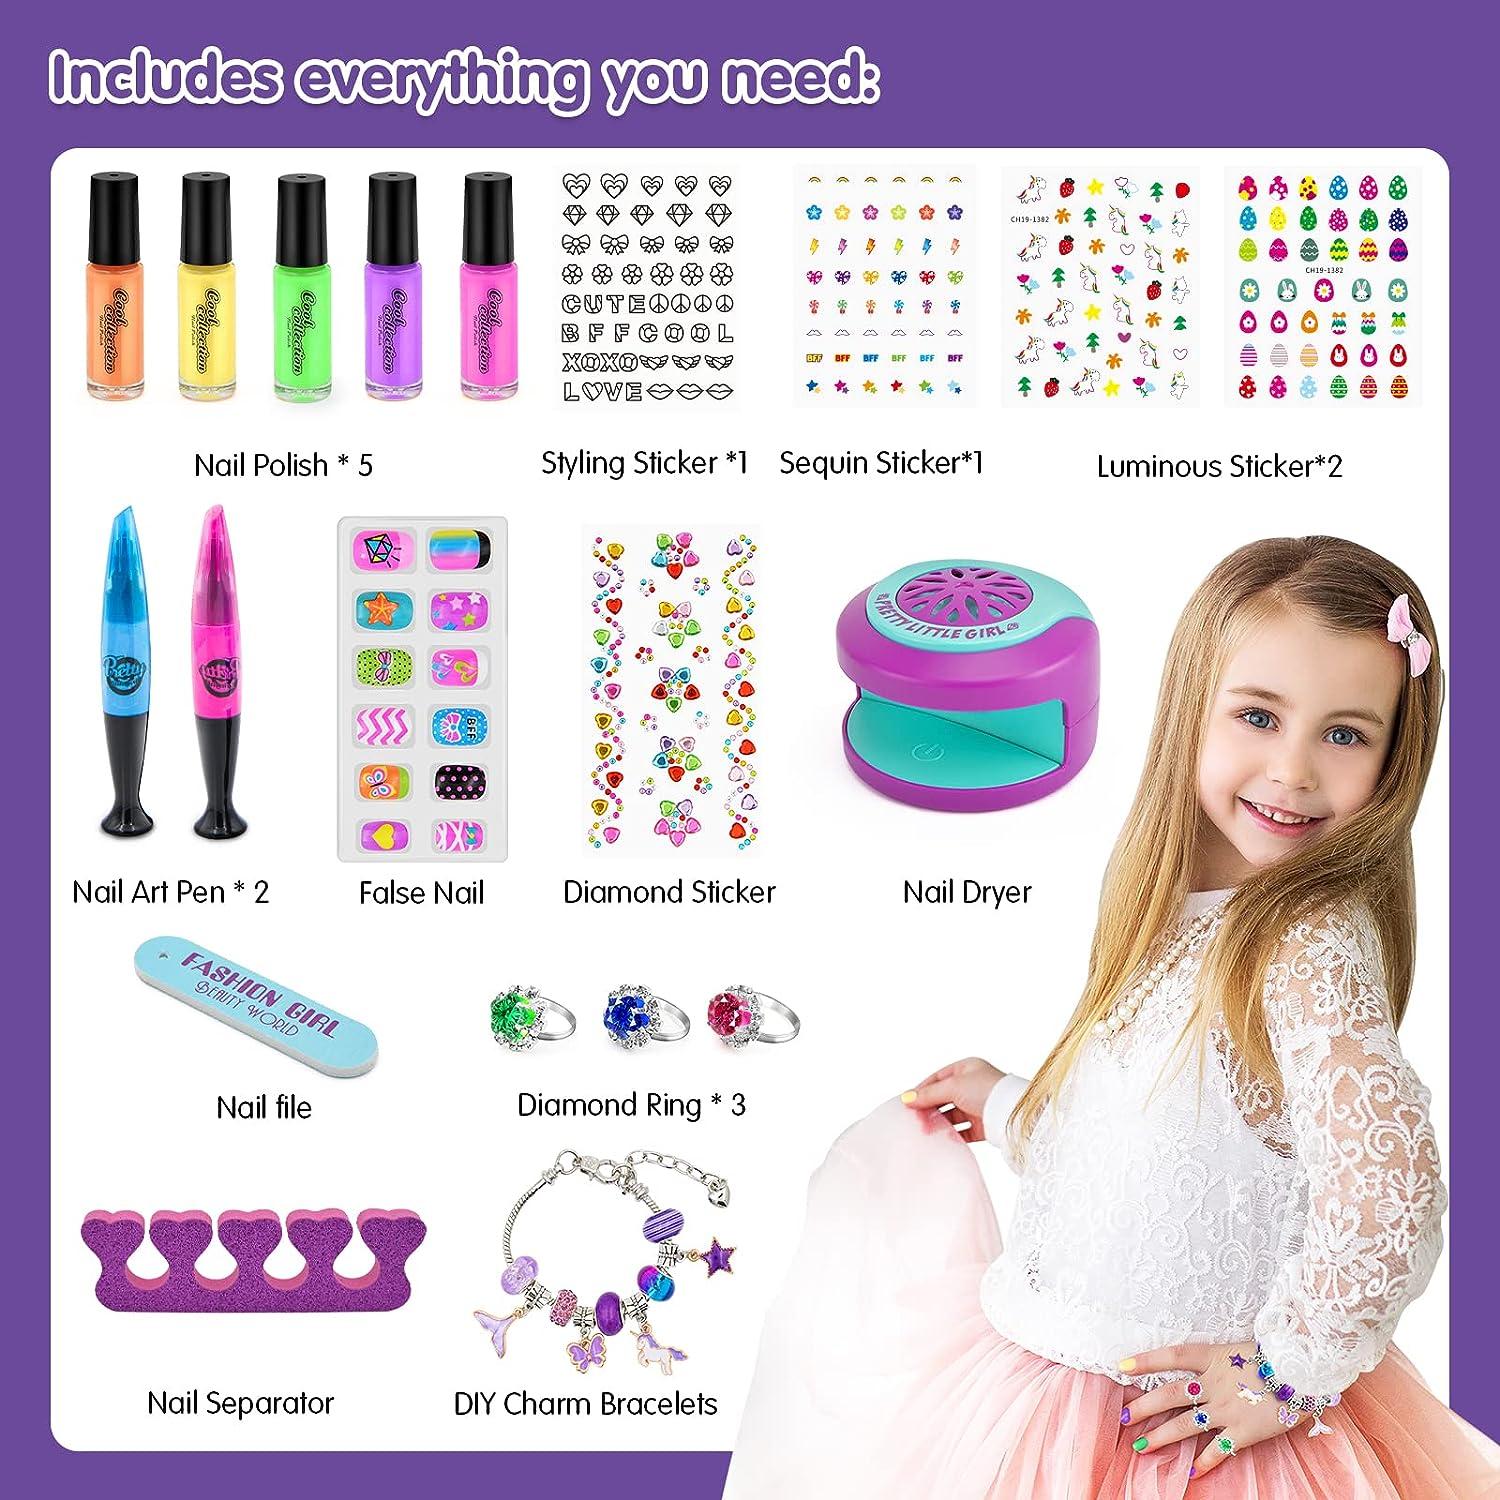 BATTOP Kids Nail Polish Set for Girls Nail Art Kits with Nail